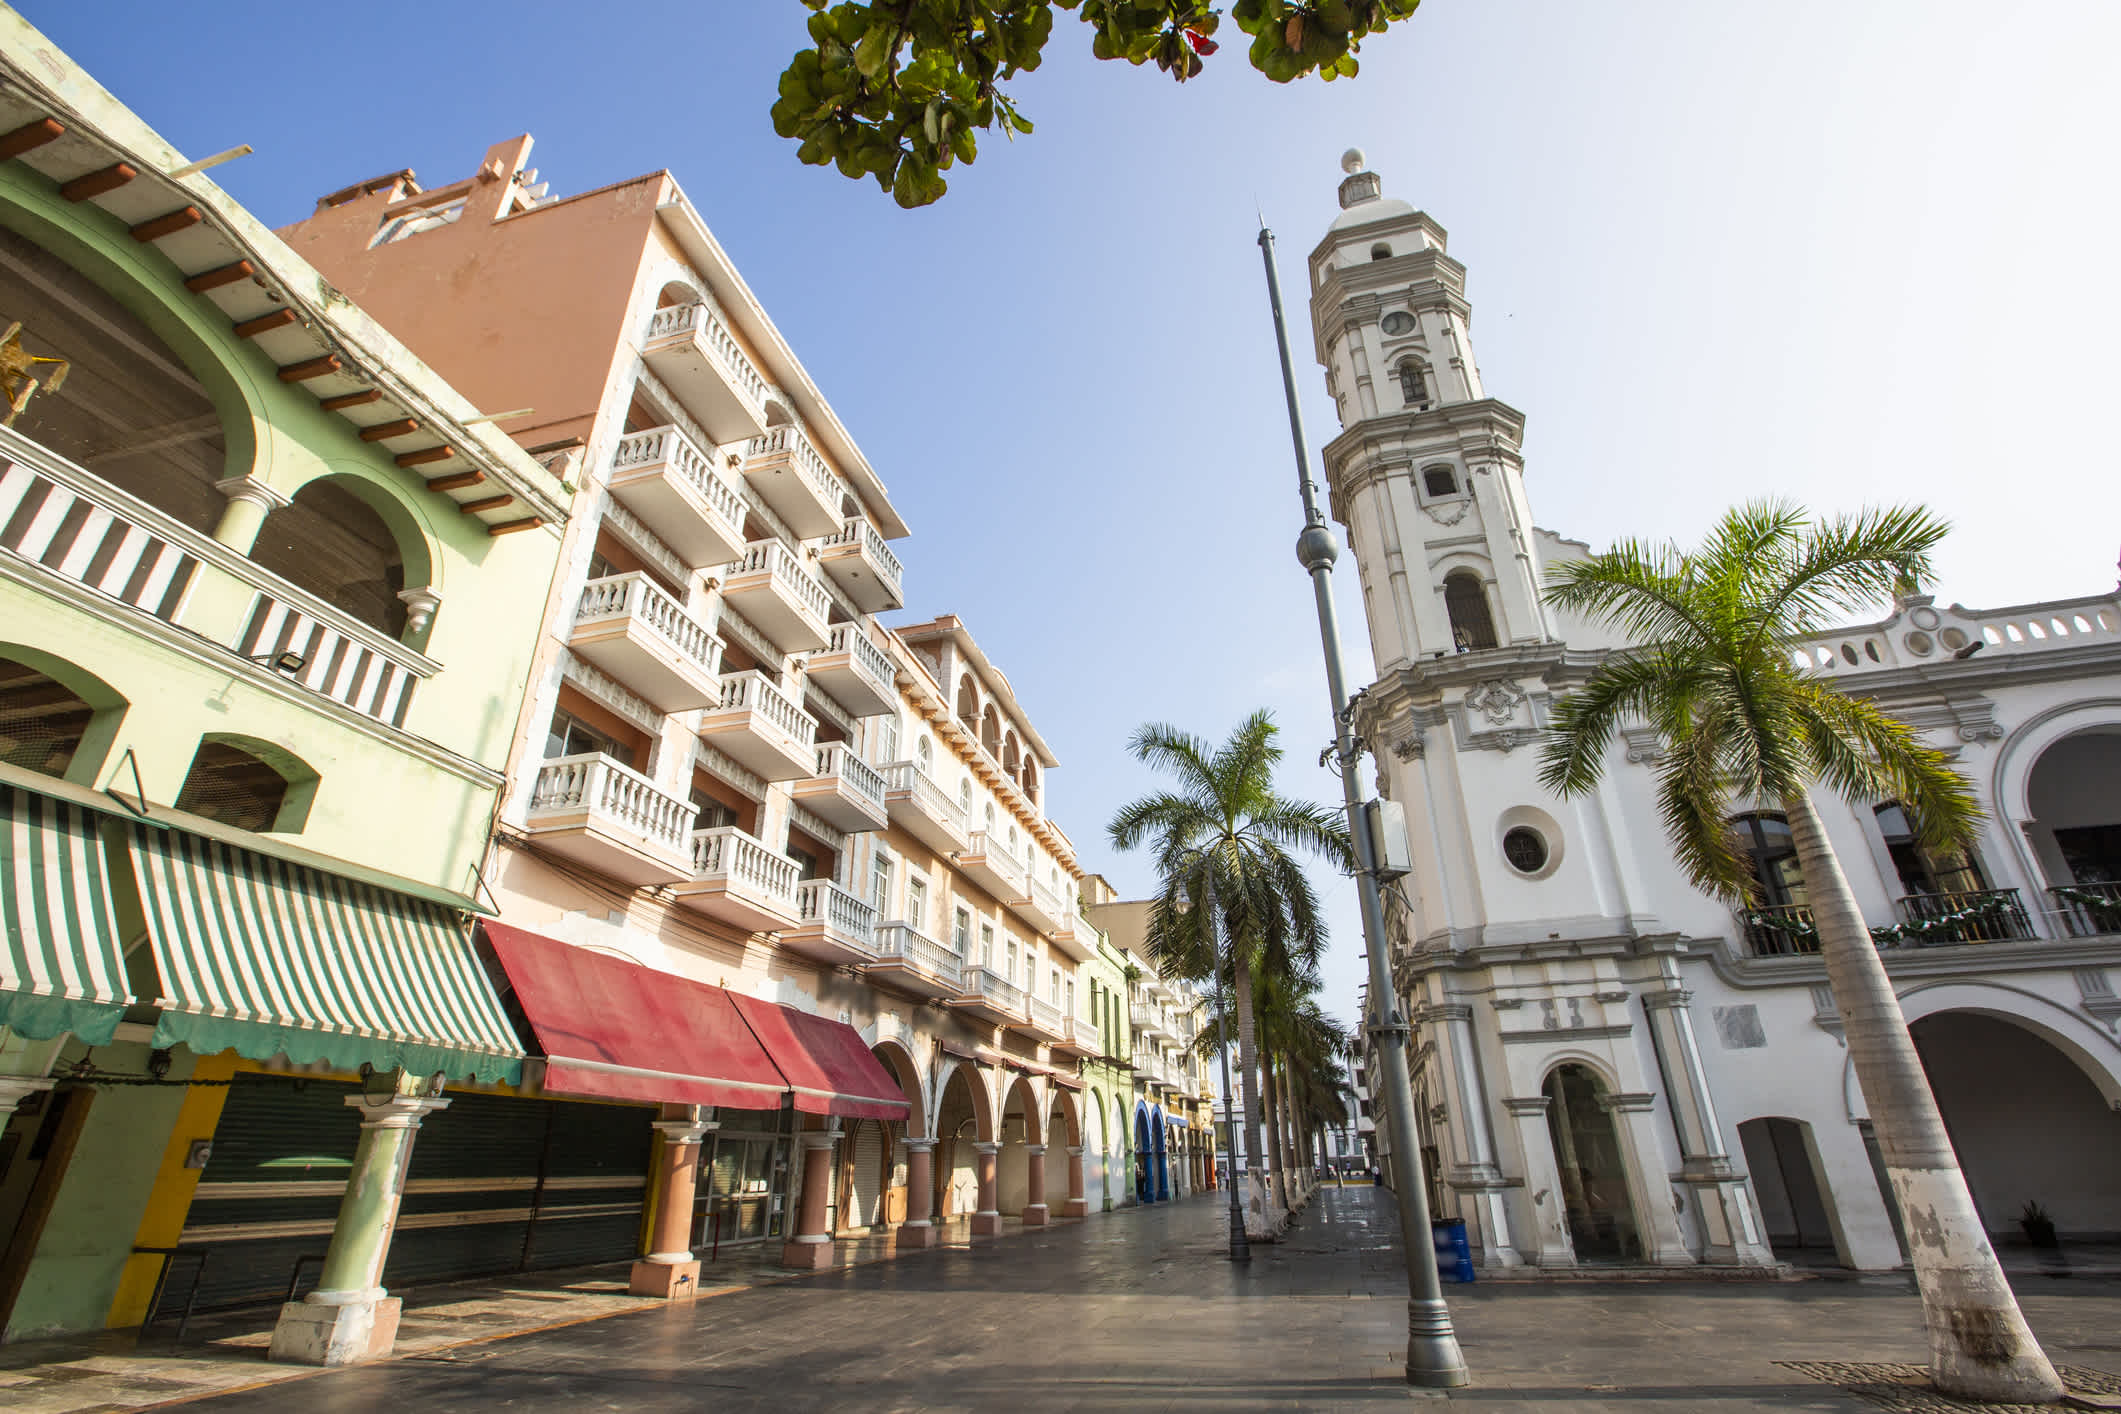 Blick auf die Stadt des historischen Zentrums von Heroica Veracruz, Mexiko.